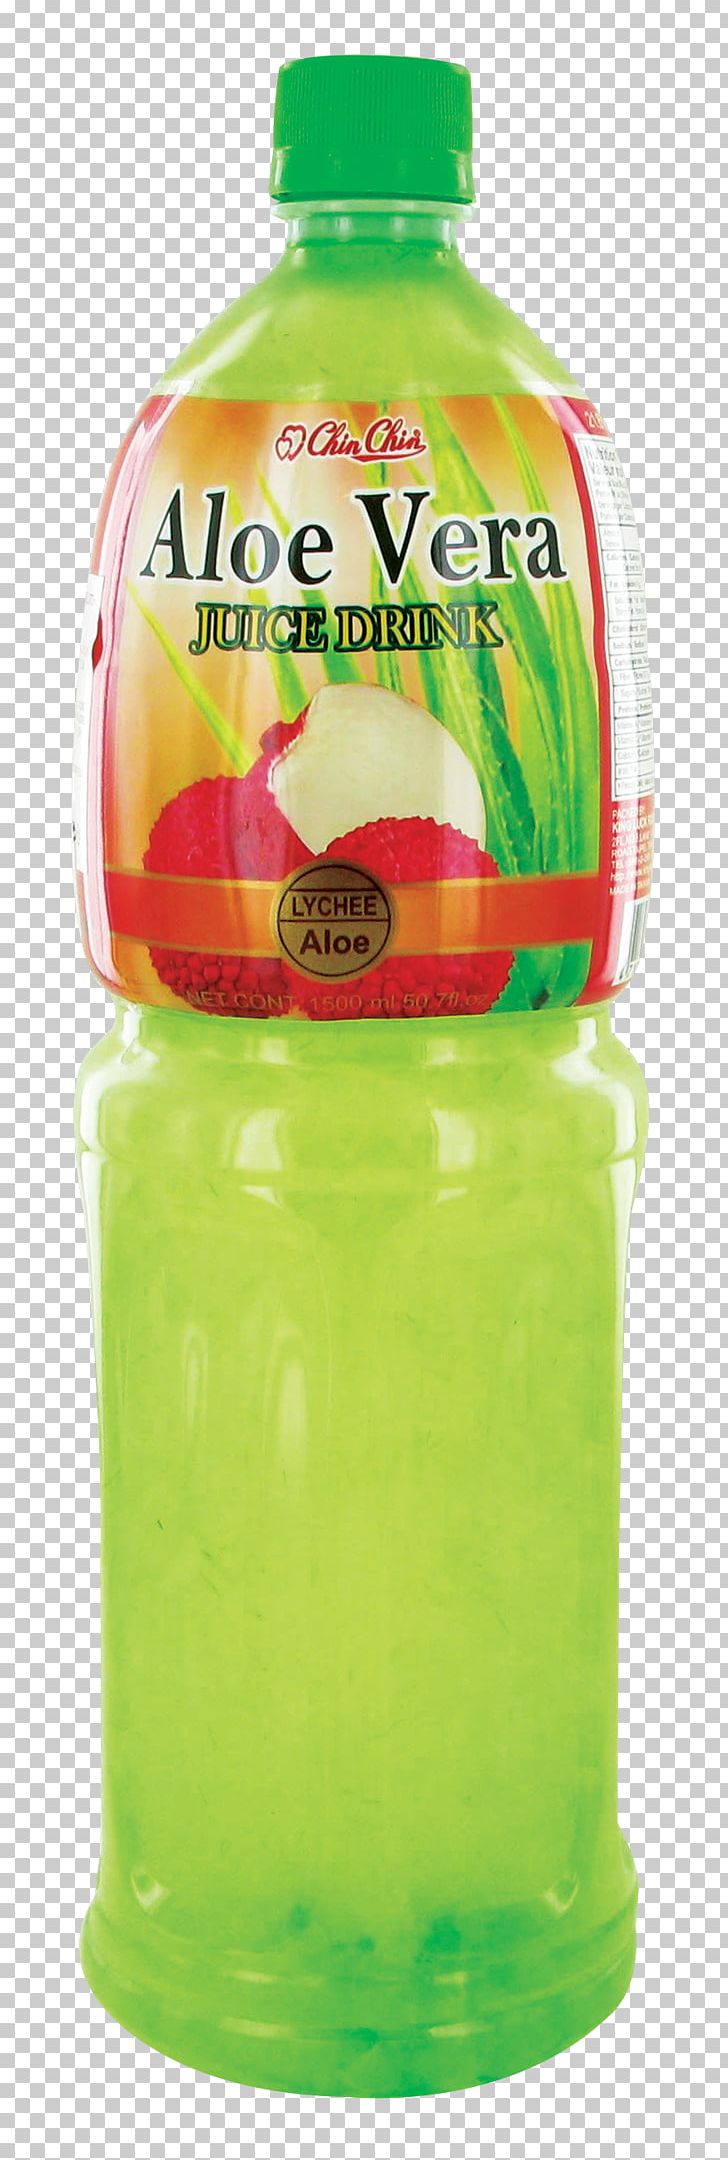 Orange Drink Juice Grass Jelly Lemon-lime Drink Bubble Tea PNG, Clipart, Alo, Aloe Vera, Beverages, Bottle, Bubble Tea Free PNG Download